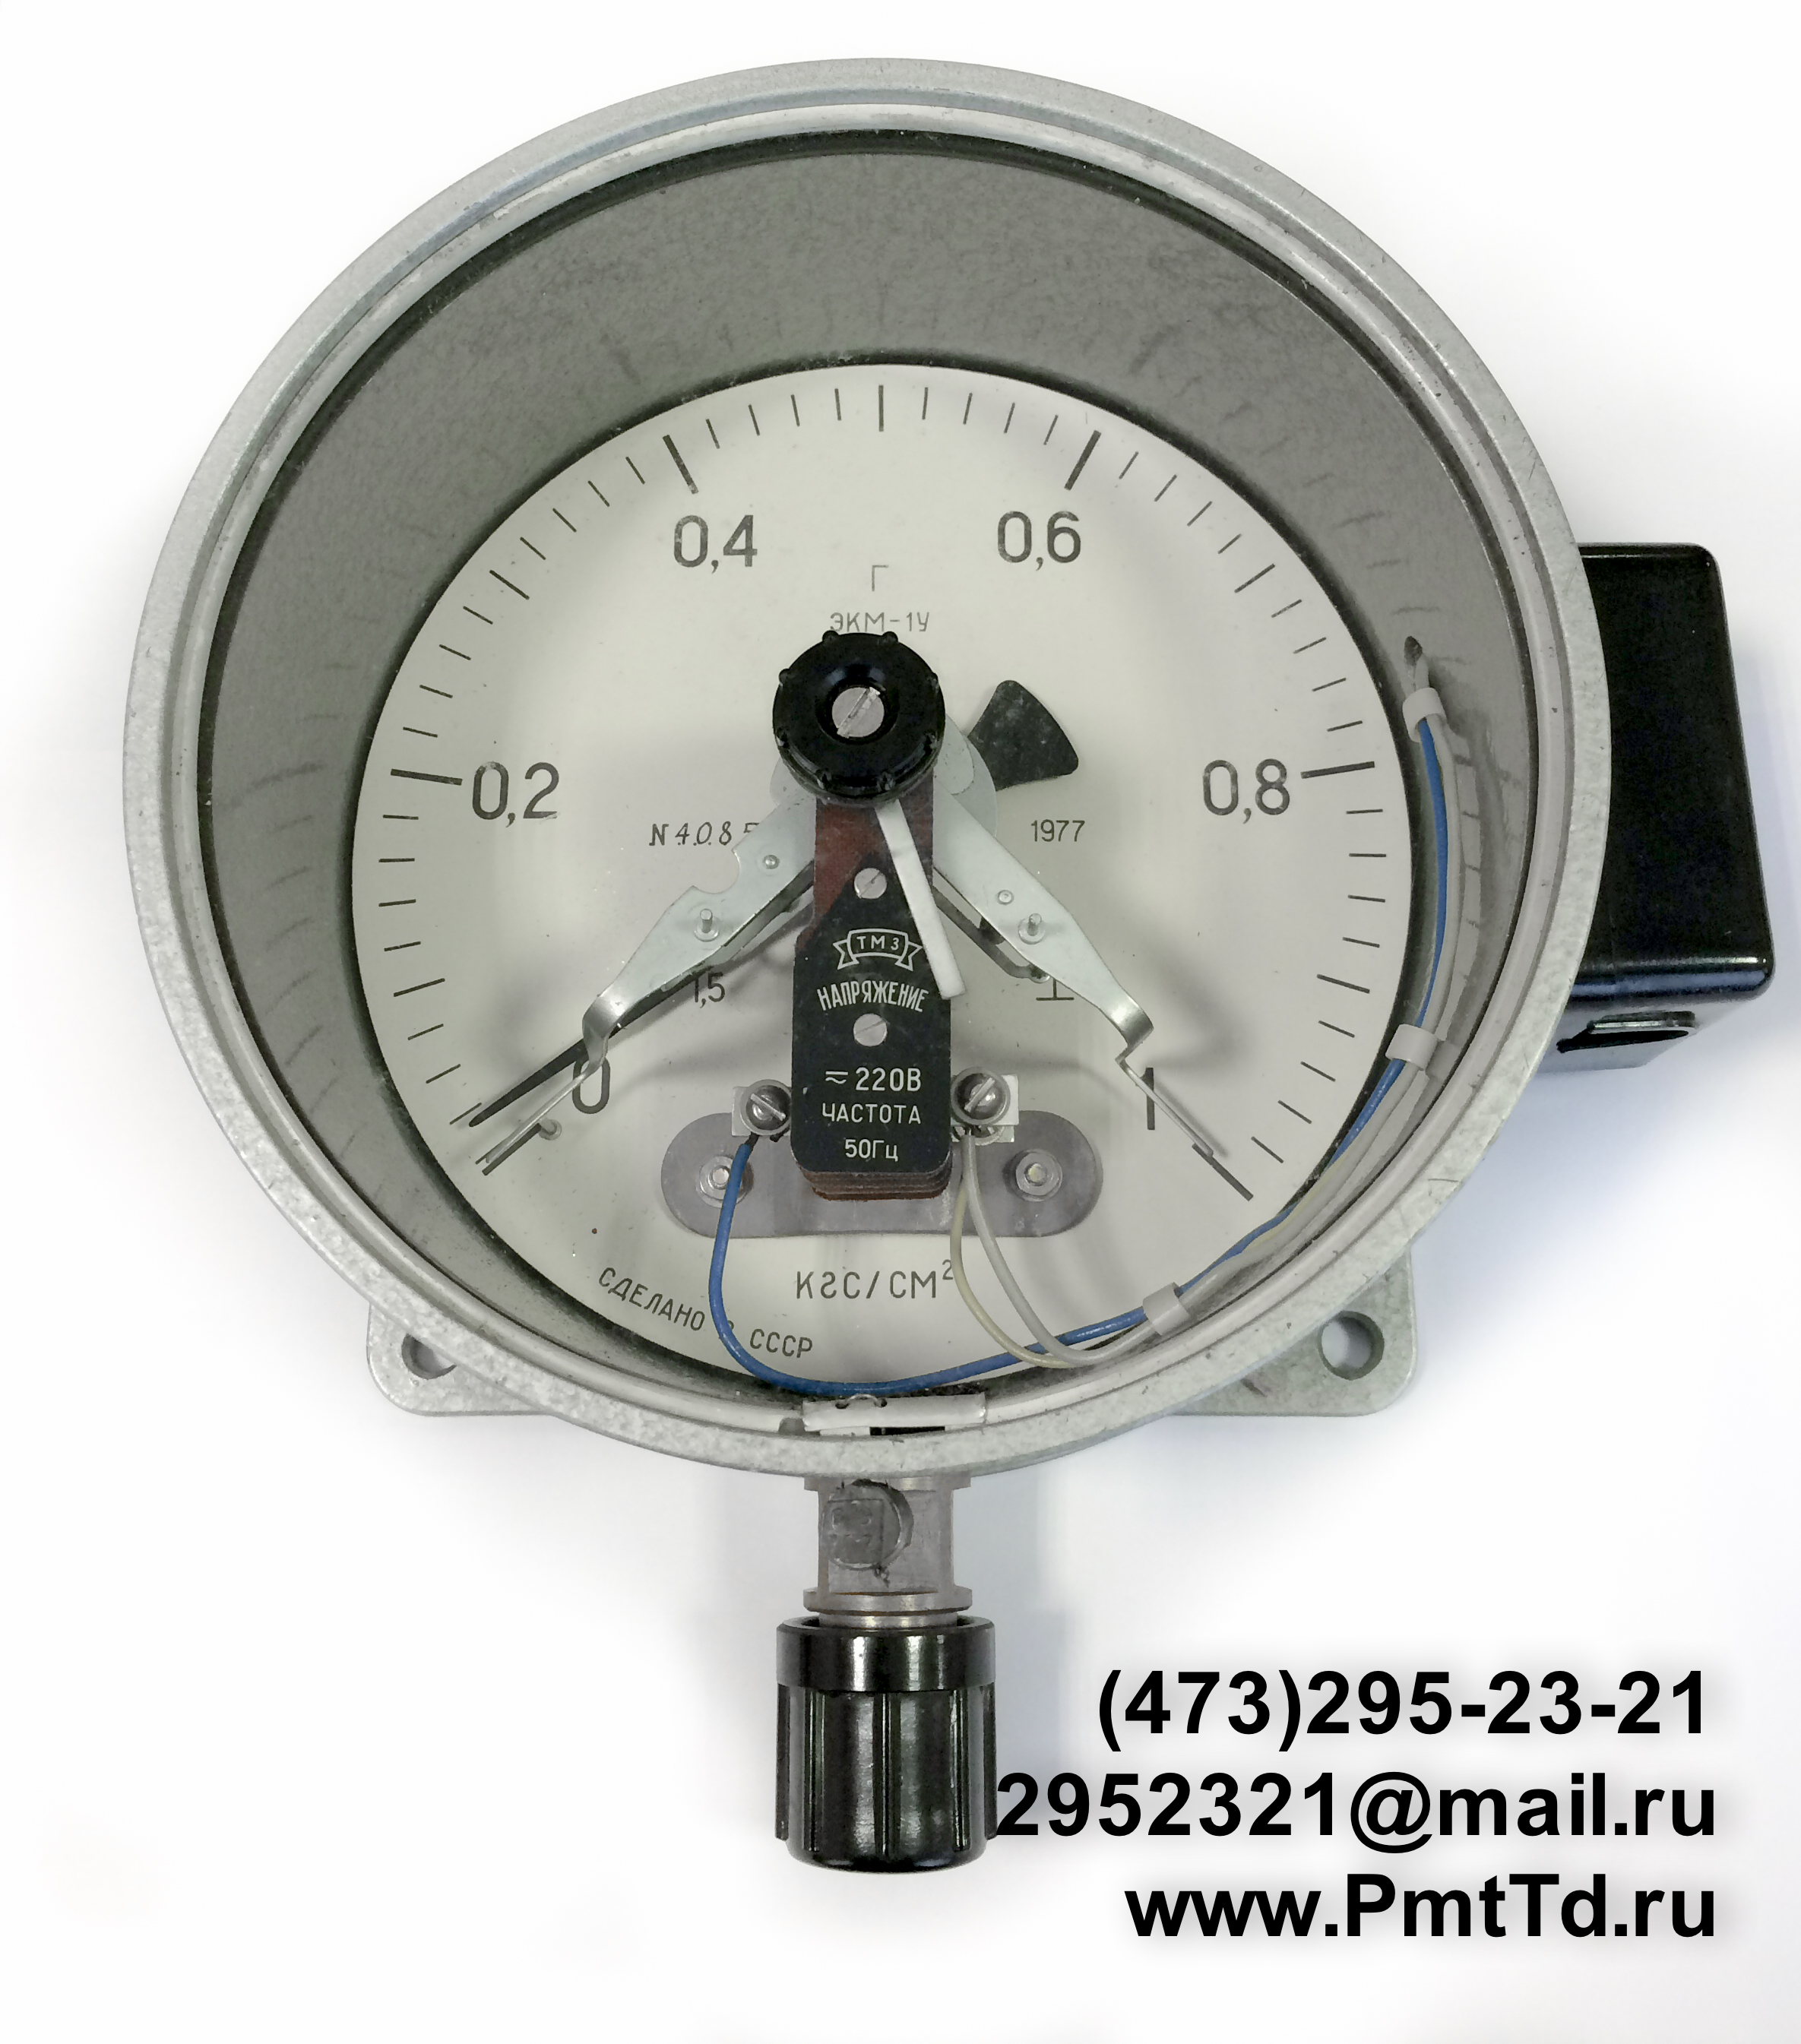 Электроконтактный манометр ЭКМ-1У 0-100 кгс/см2